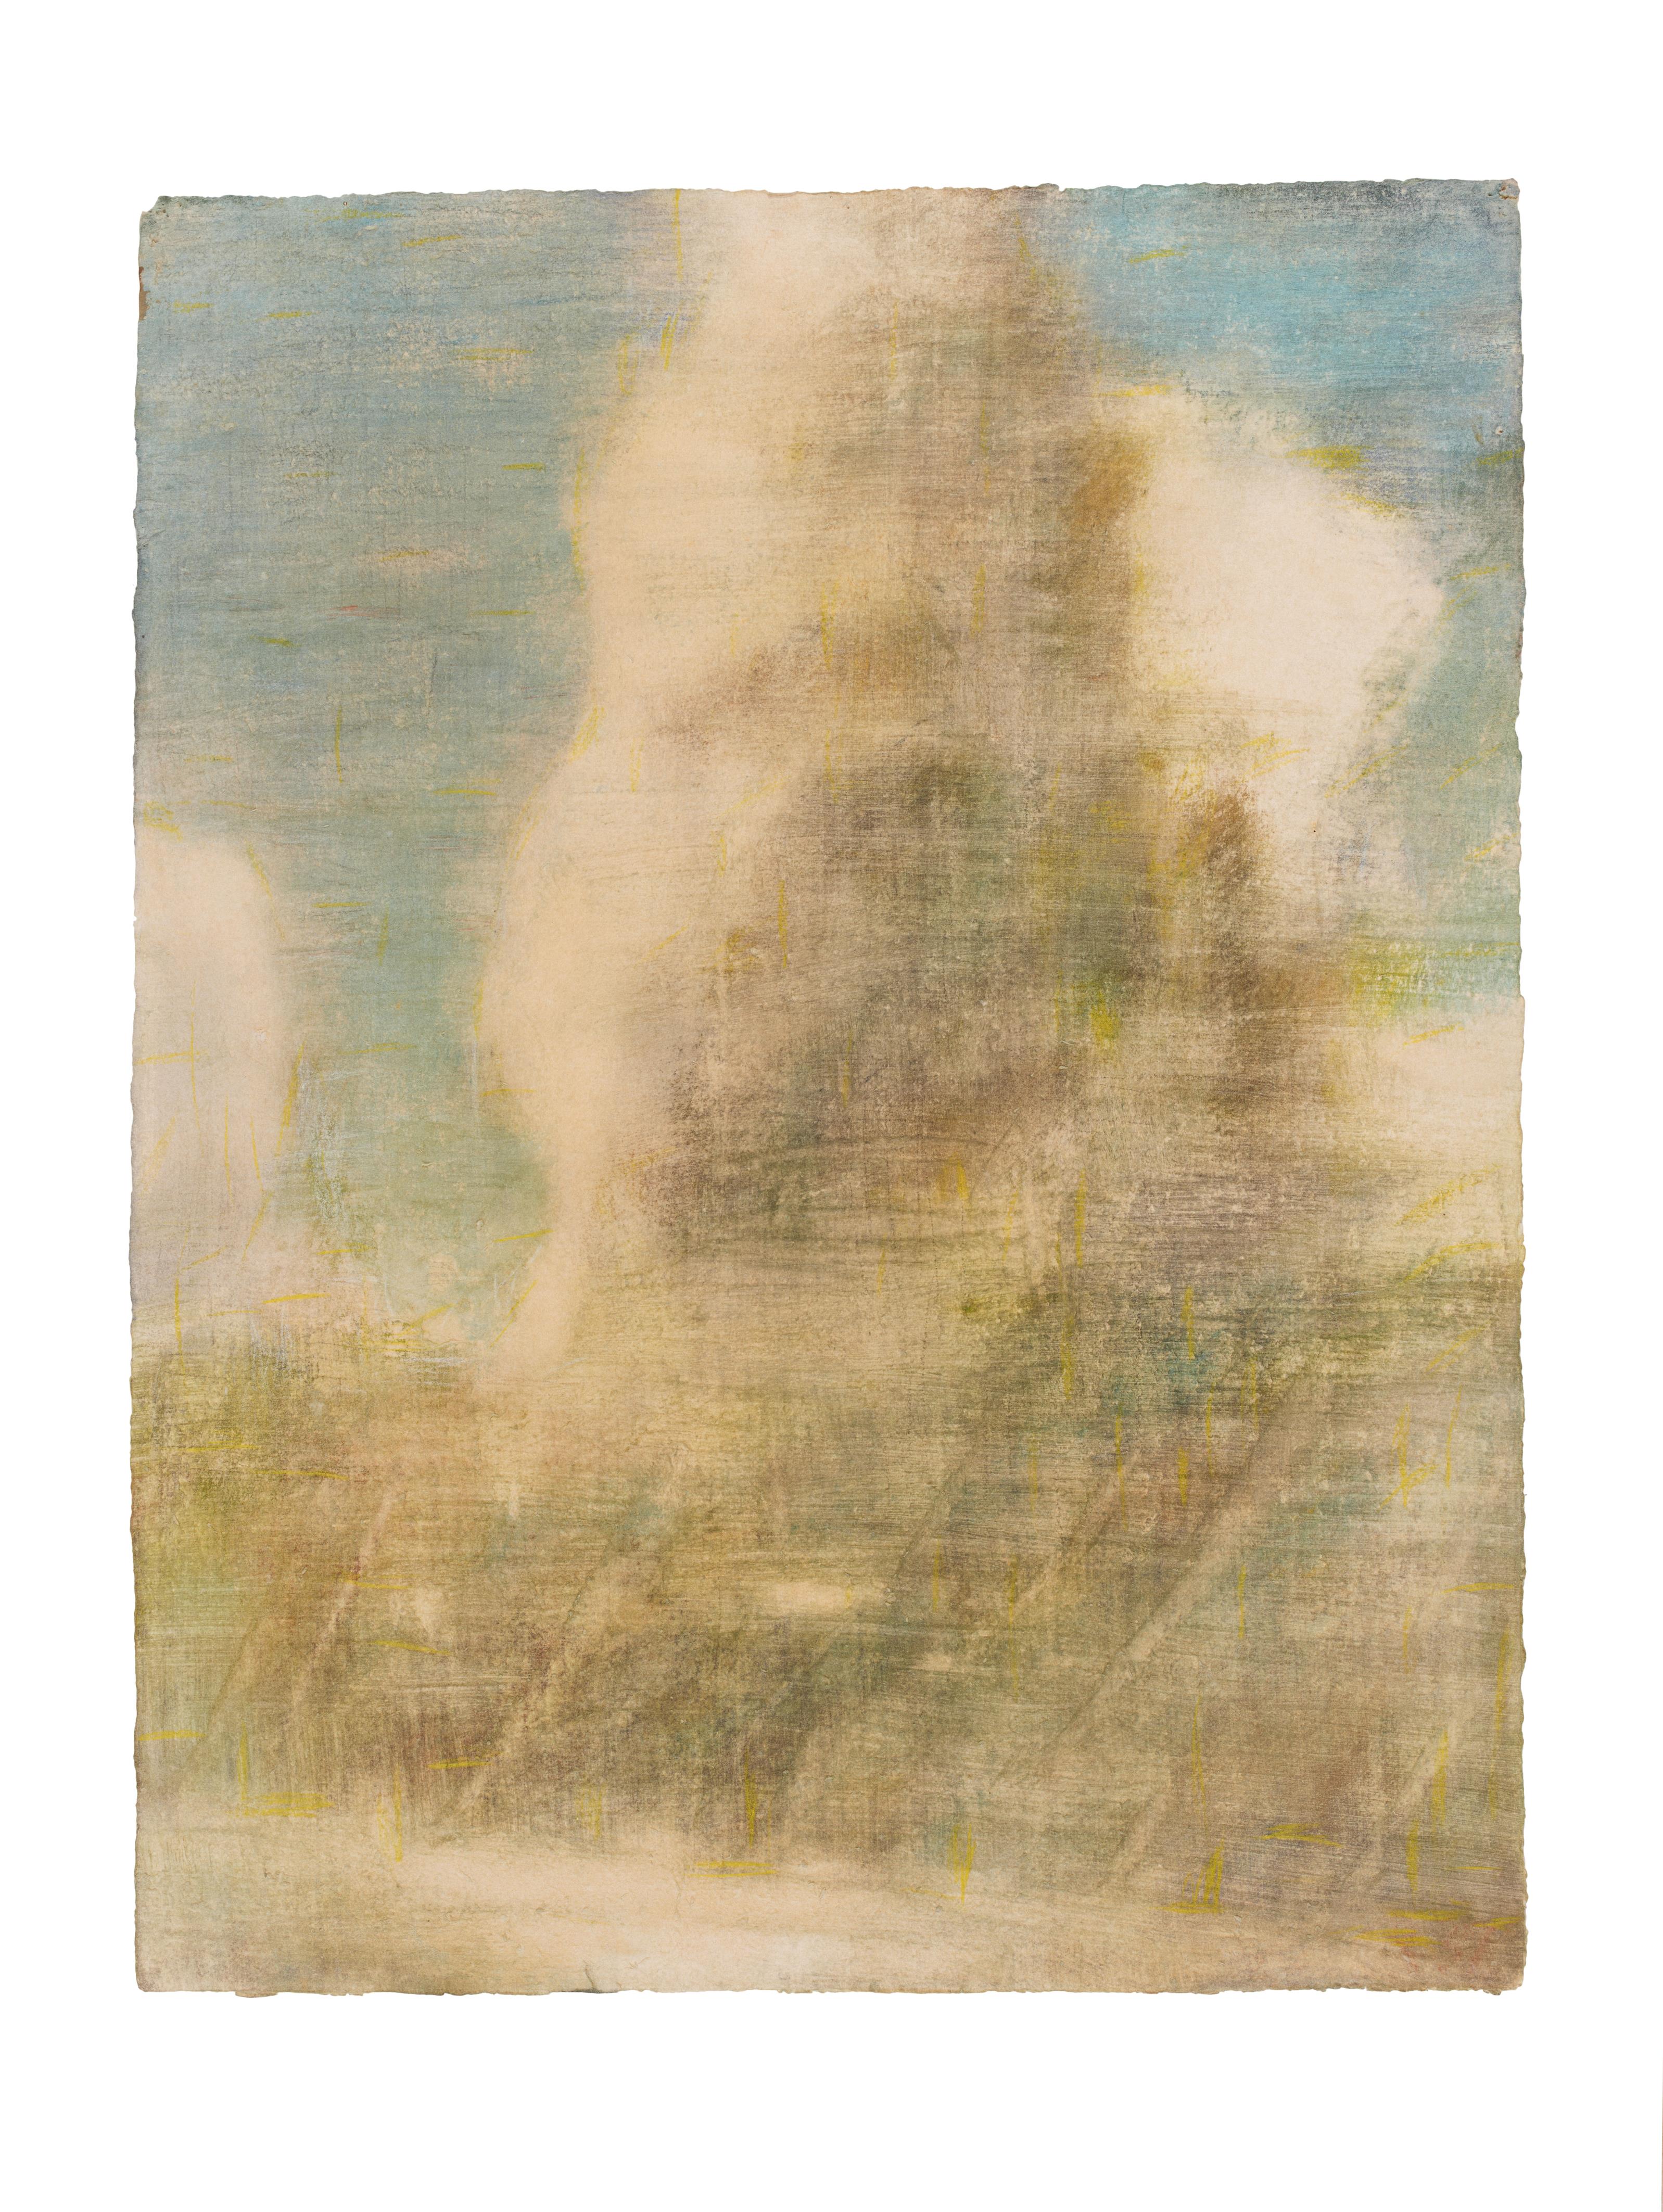 Christian Rohlfs - Aufsteigende Gewitterwolke (Seelandschaft mit Wolke) - image-1